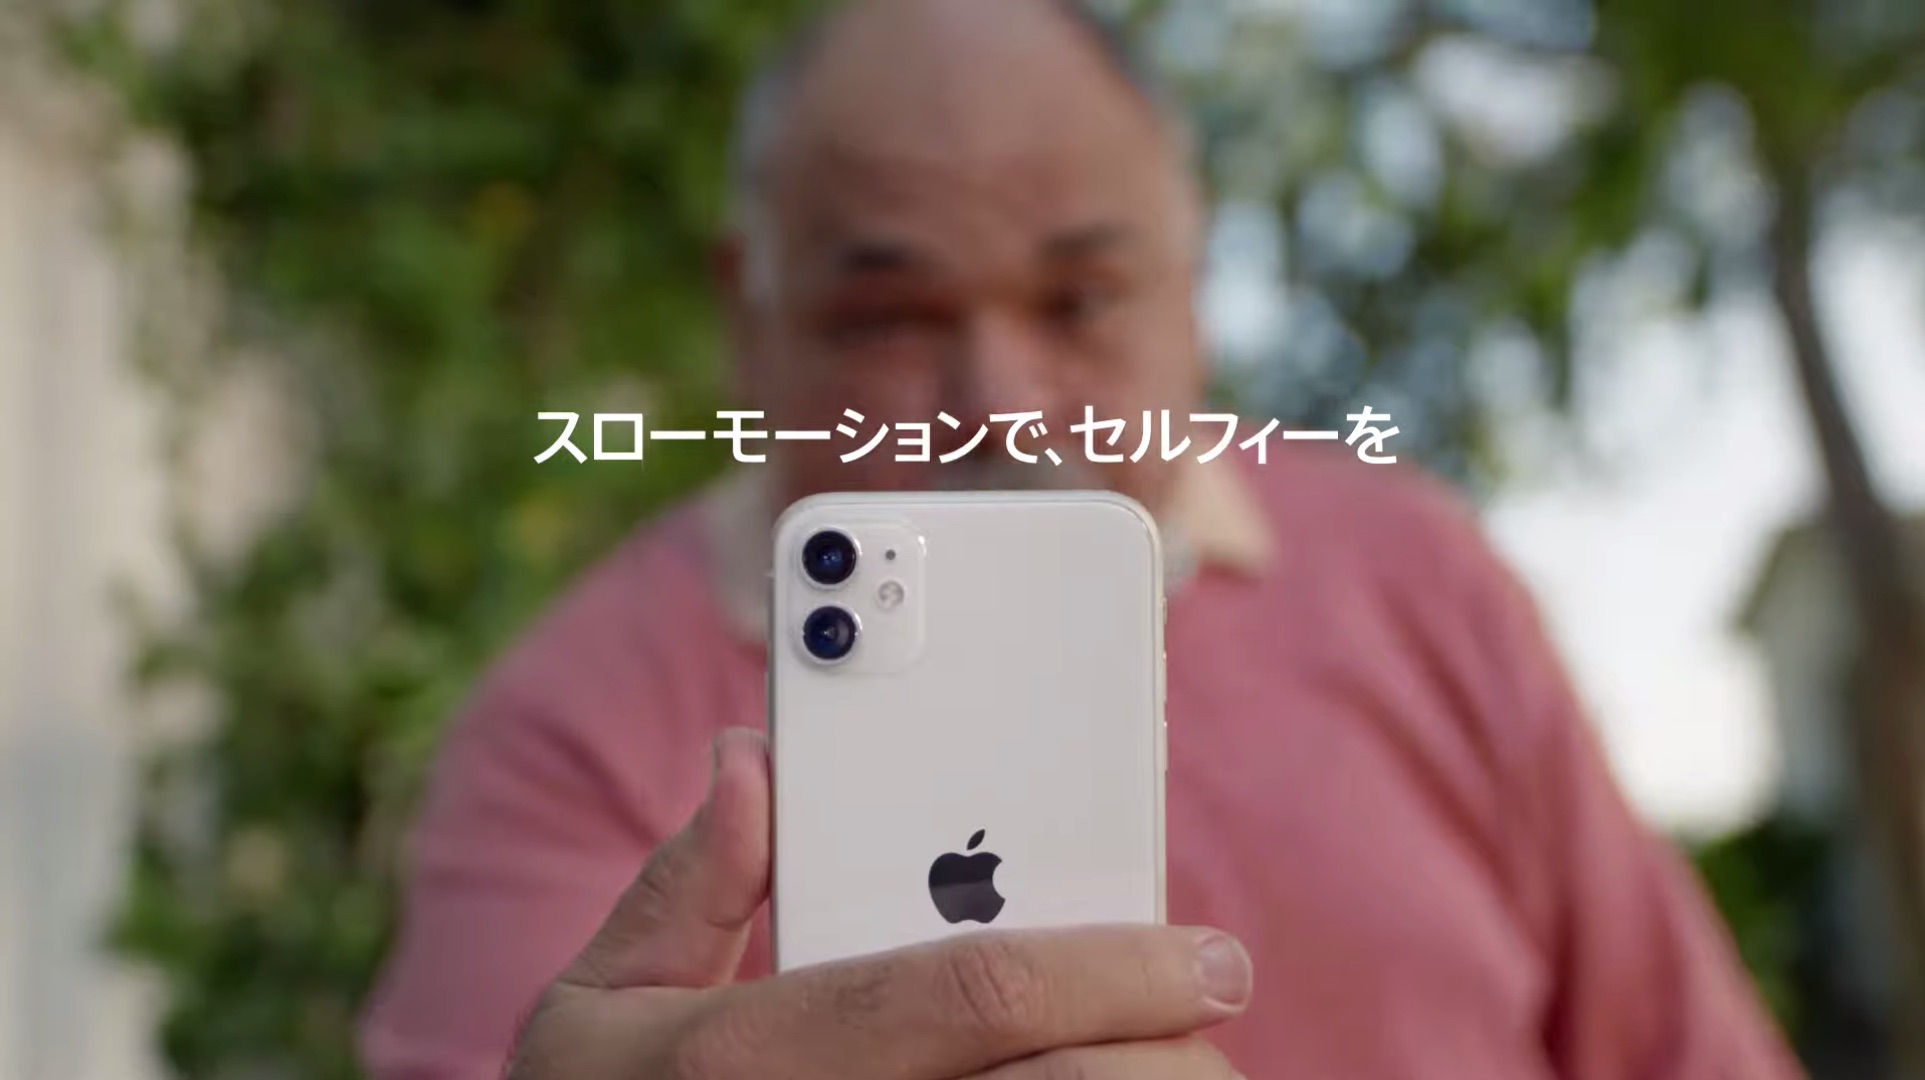 Apple Iphone 11 シリーズ搭載機能 スローフィー をアピールしたcmを公開 私設apple委員会